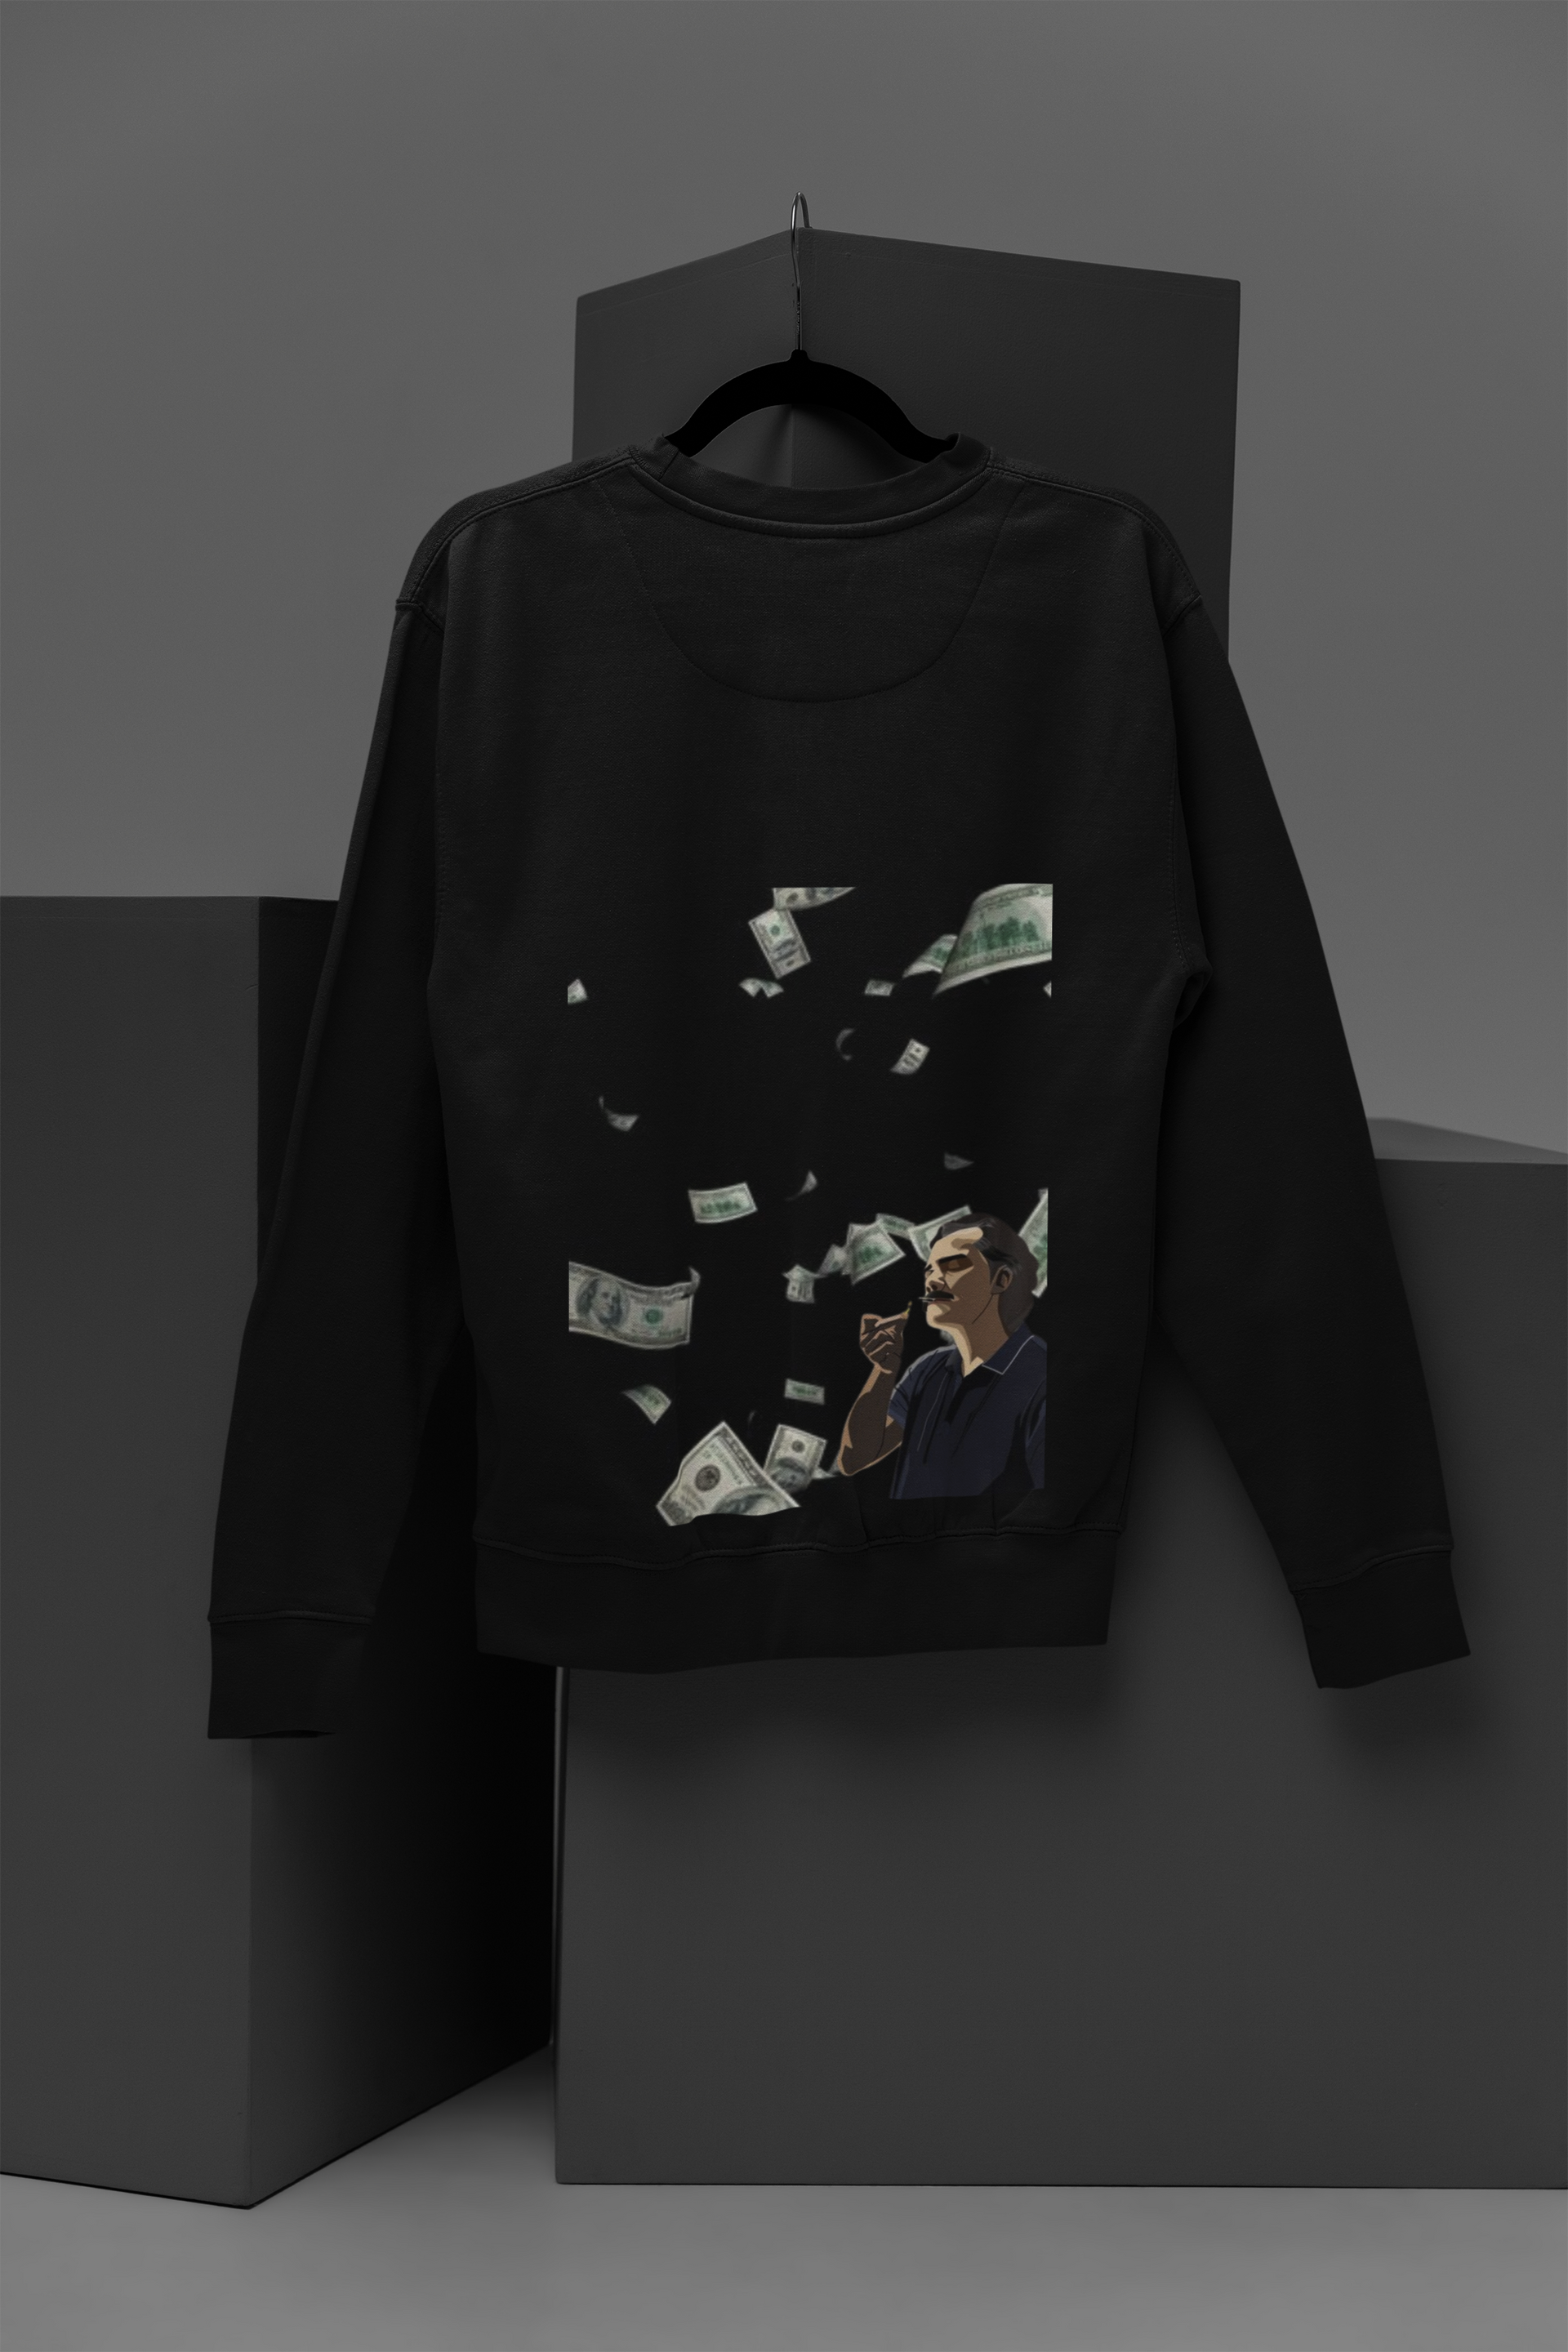 Pablo Sweatshirt | NodeWear Premium Wear